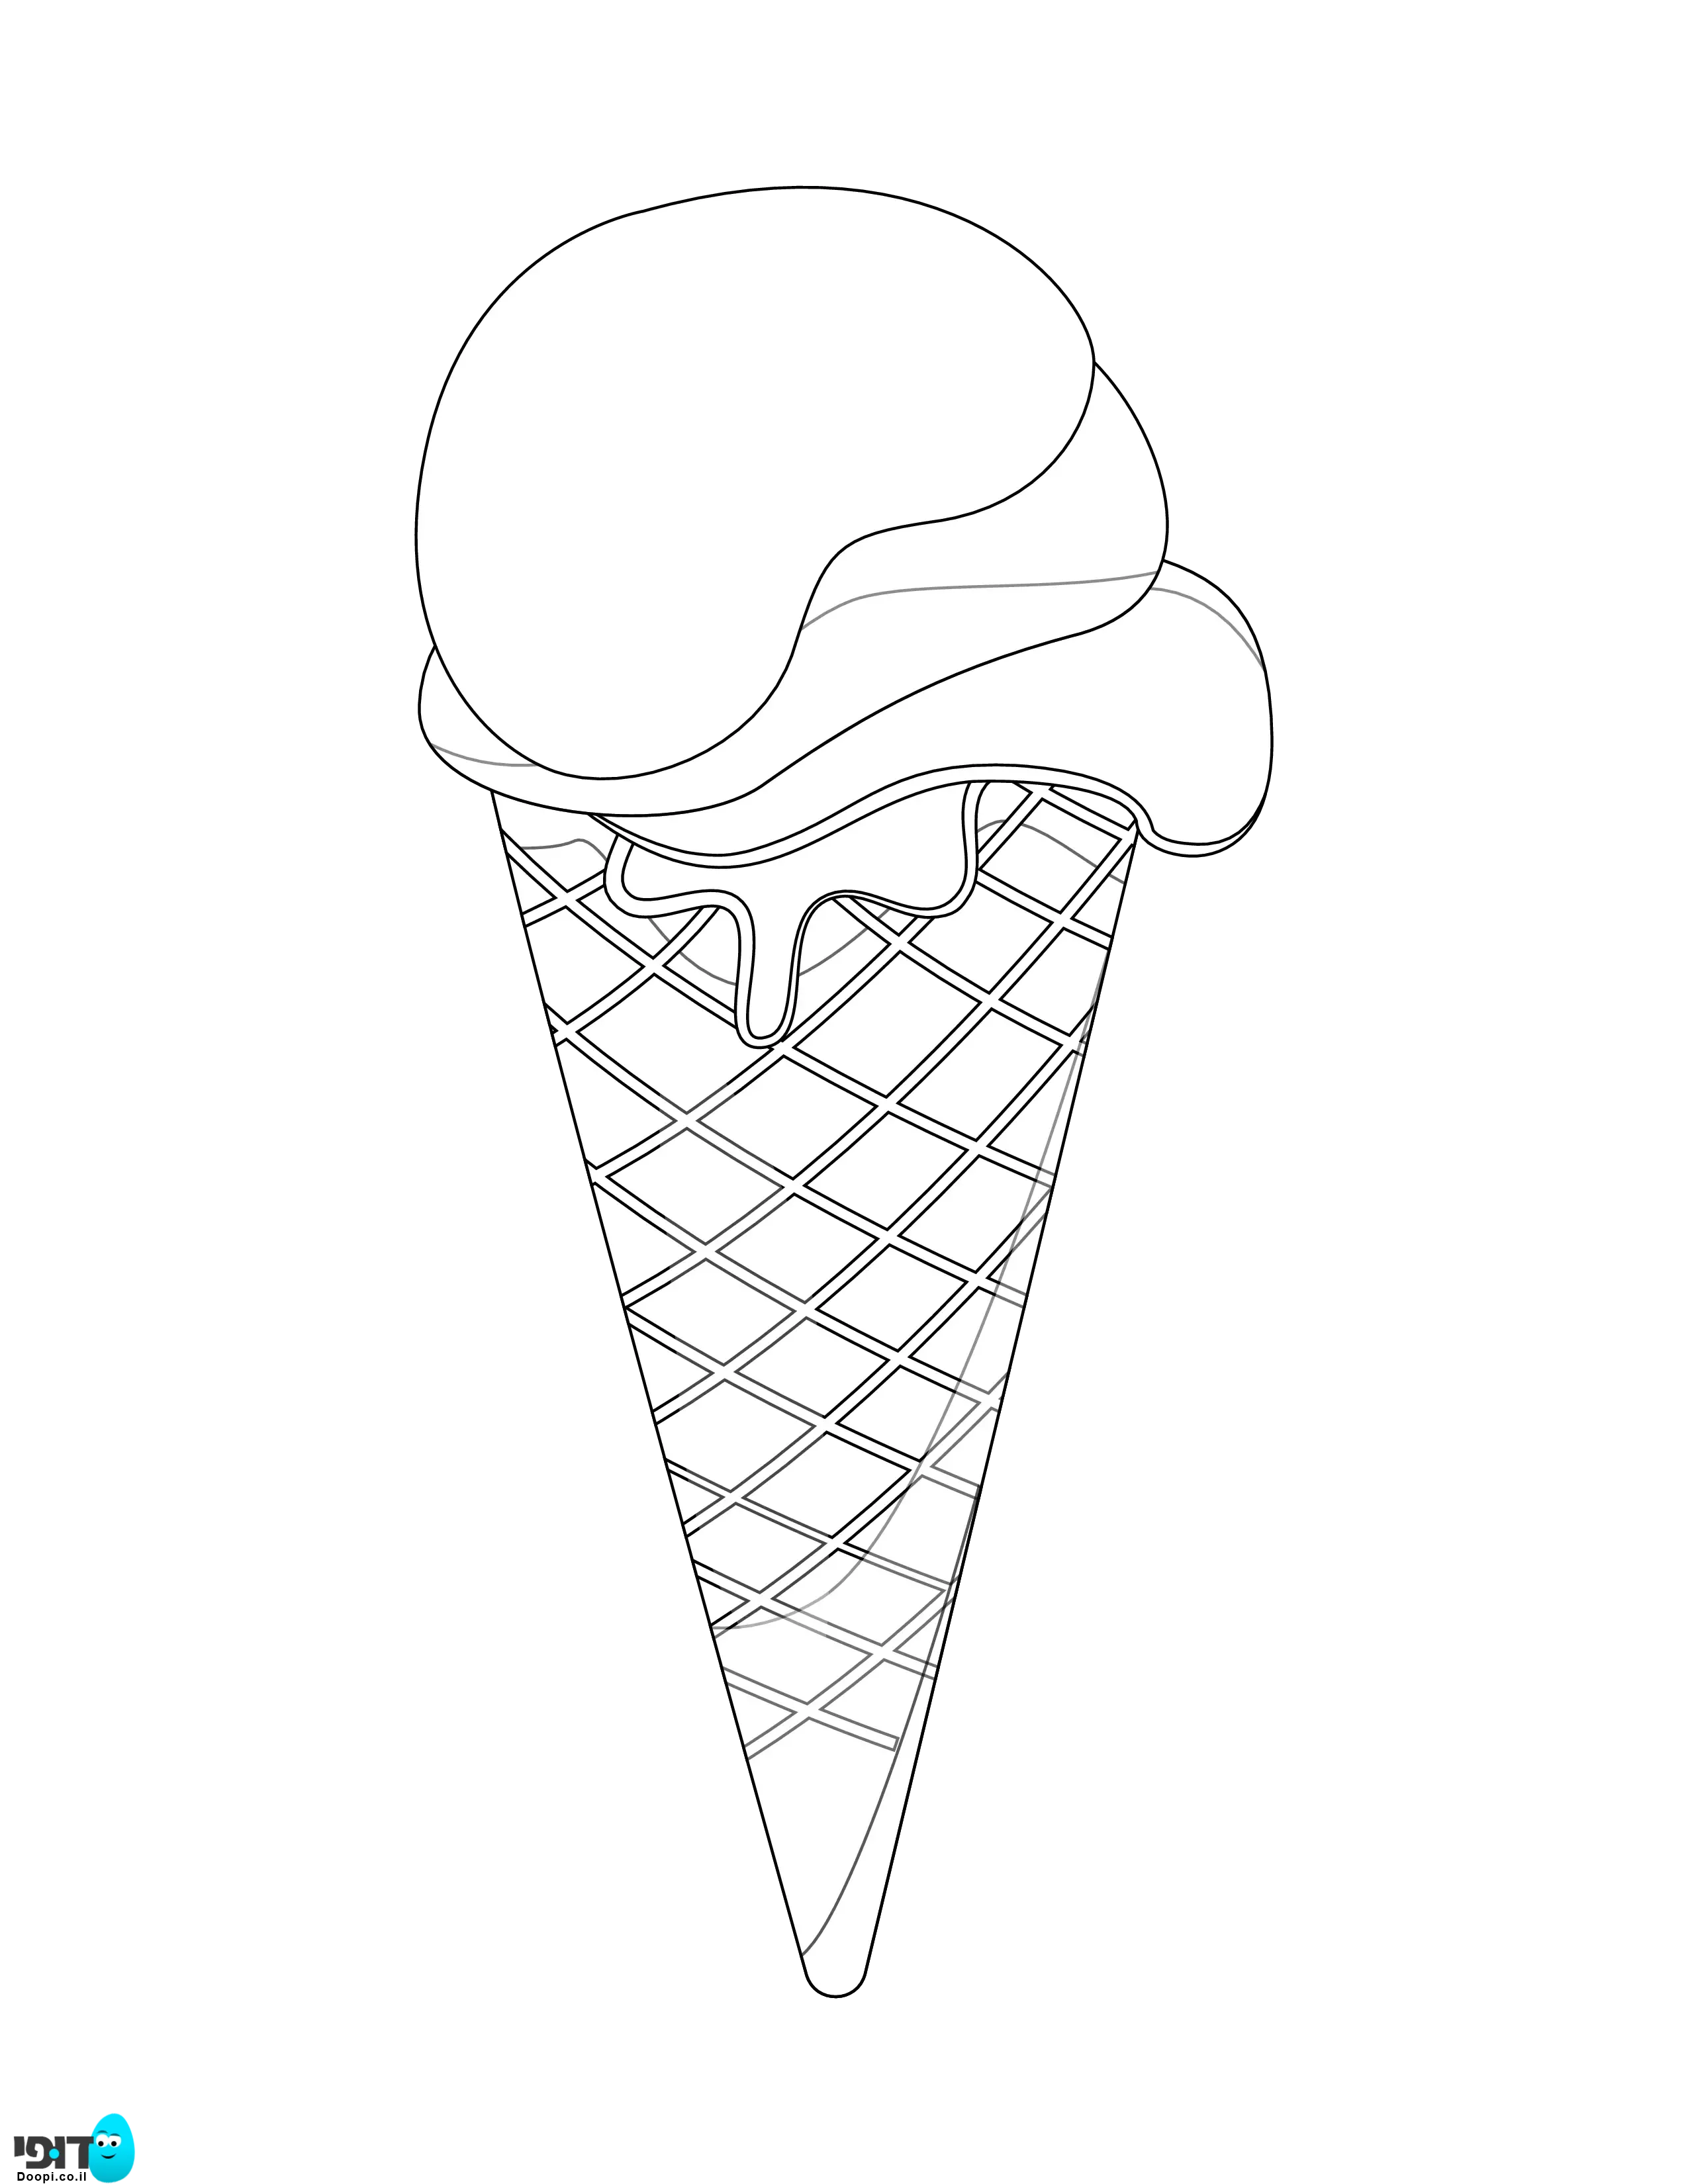 דף צביעה של גלידה רגילה